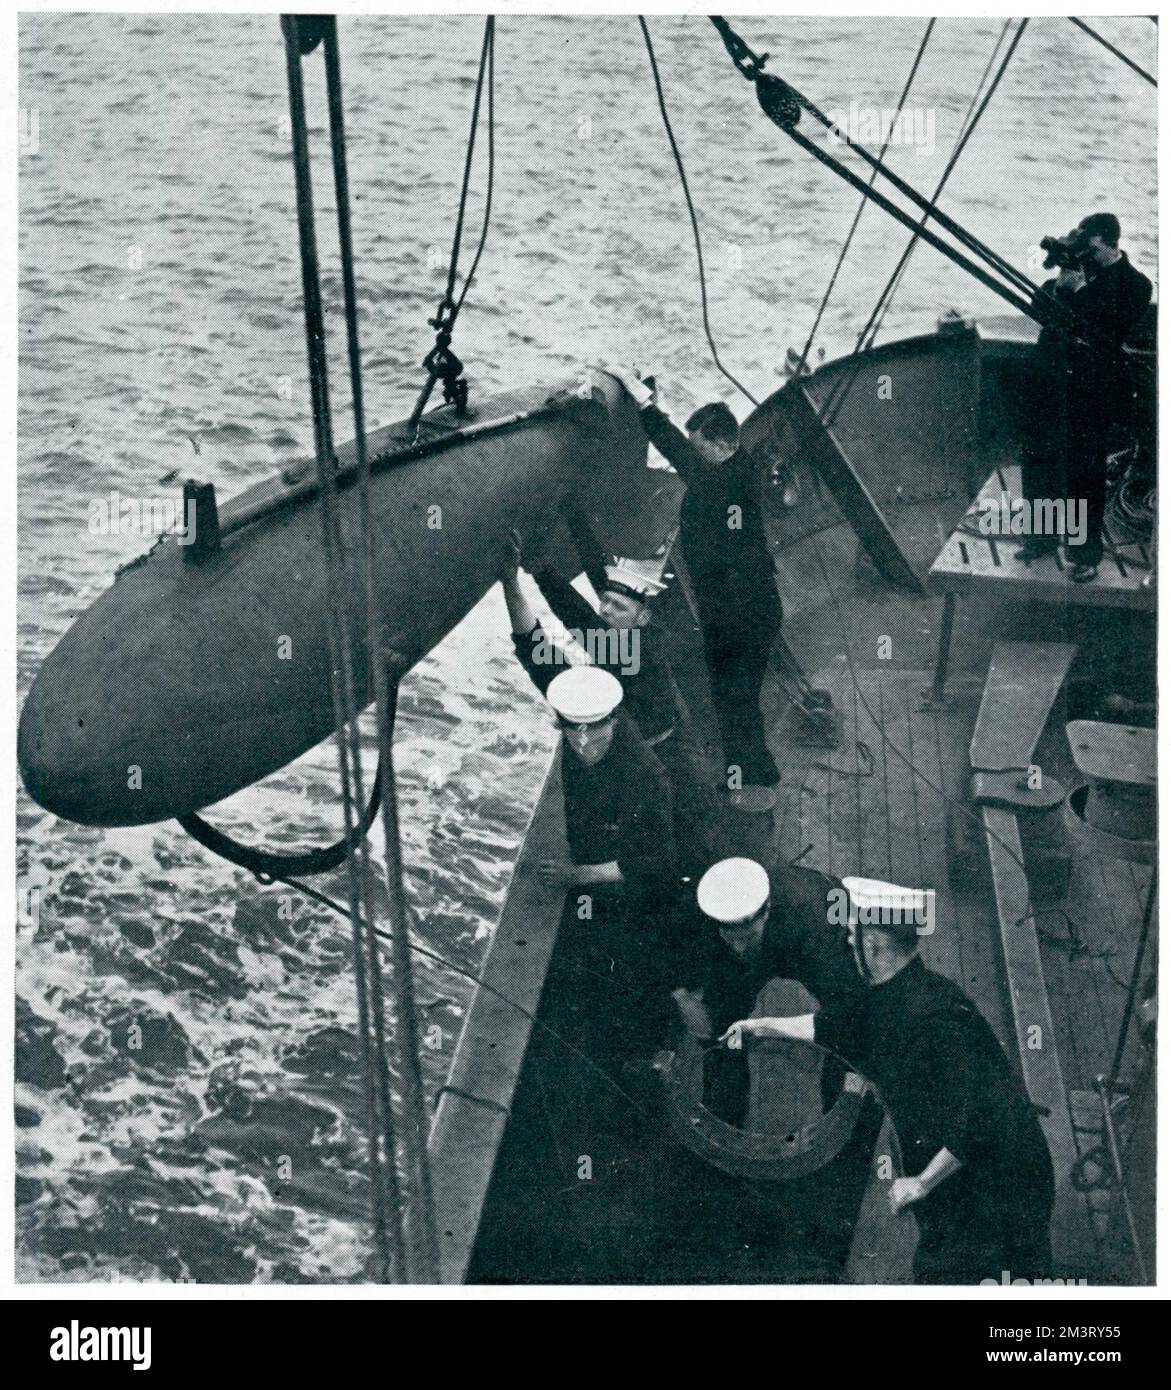 1938 begann ein Programm zur Ausbildung von Fischern als freiwillige Minenräumer und wurde genutzt, um der Marine die Konzentration an anderer Stelle zu ermöglichen. Dieses Foto zeigt die Auszubildenden, die ihren Parvan über Bord schieben, der verwendet wurde, um die Anlegestellen von Unterwasserminen zu durchtrennen. Datum: 1939 Stockfoto